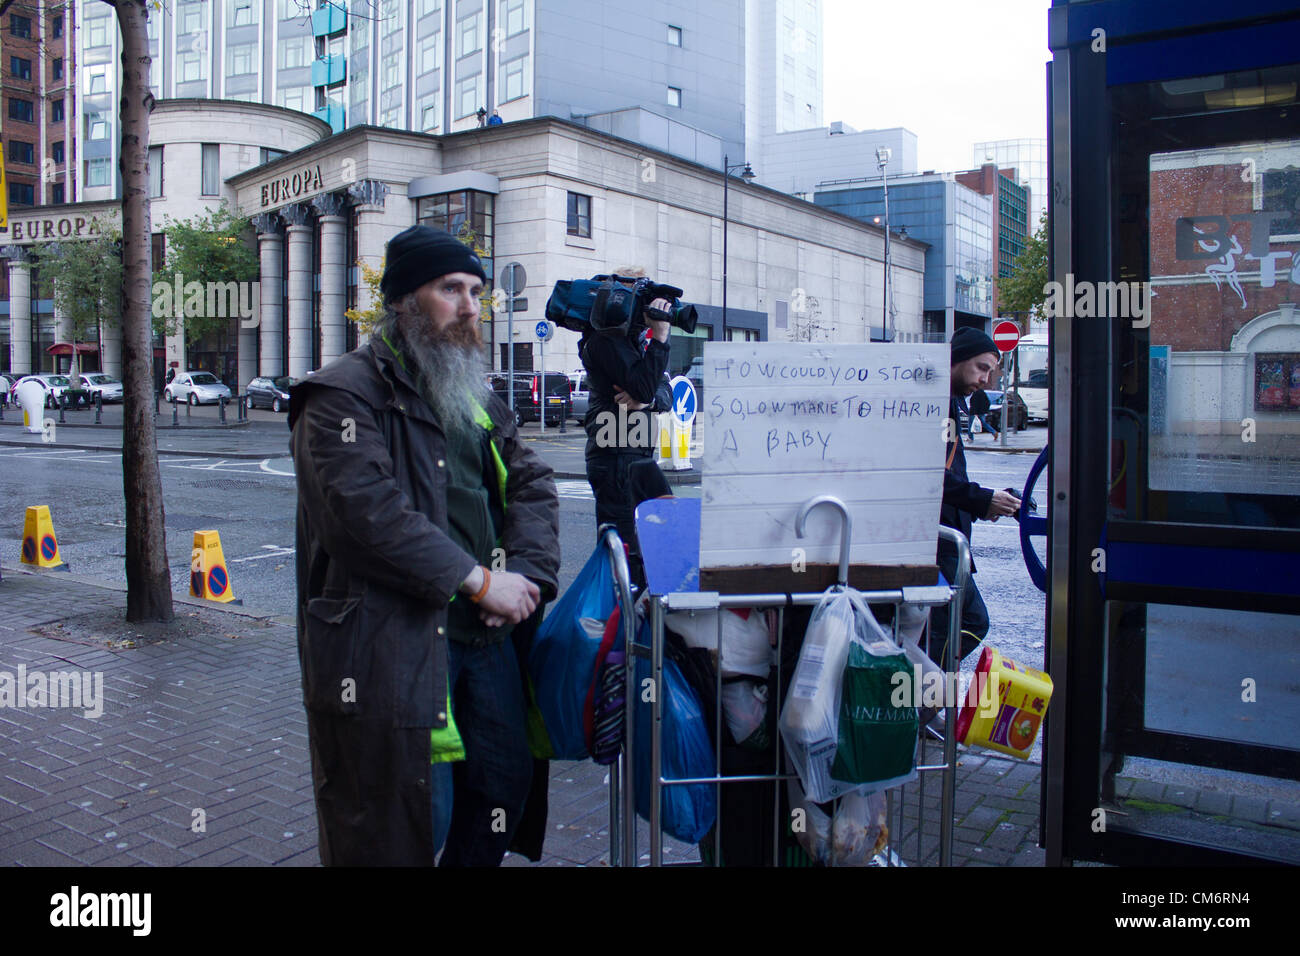 Belfast, UK. 18. Oktober 2012. Auch der Obdachlose protestiert bei bei der Eröffnung der Marie stopes Klinik in Belfast. Die Privatklinik, die heute eröffnet, bietet Abtreibungen unter das Gesetz in Nordirland. Stockfoto